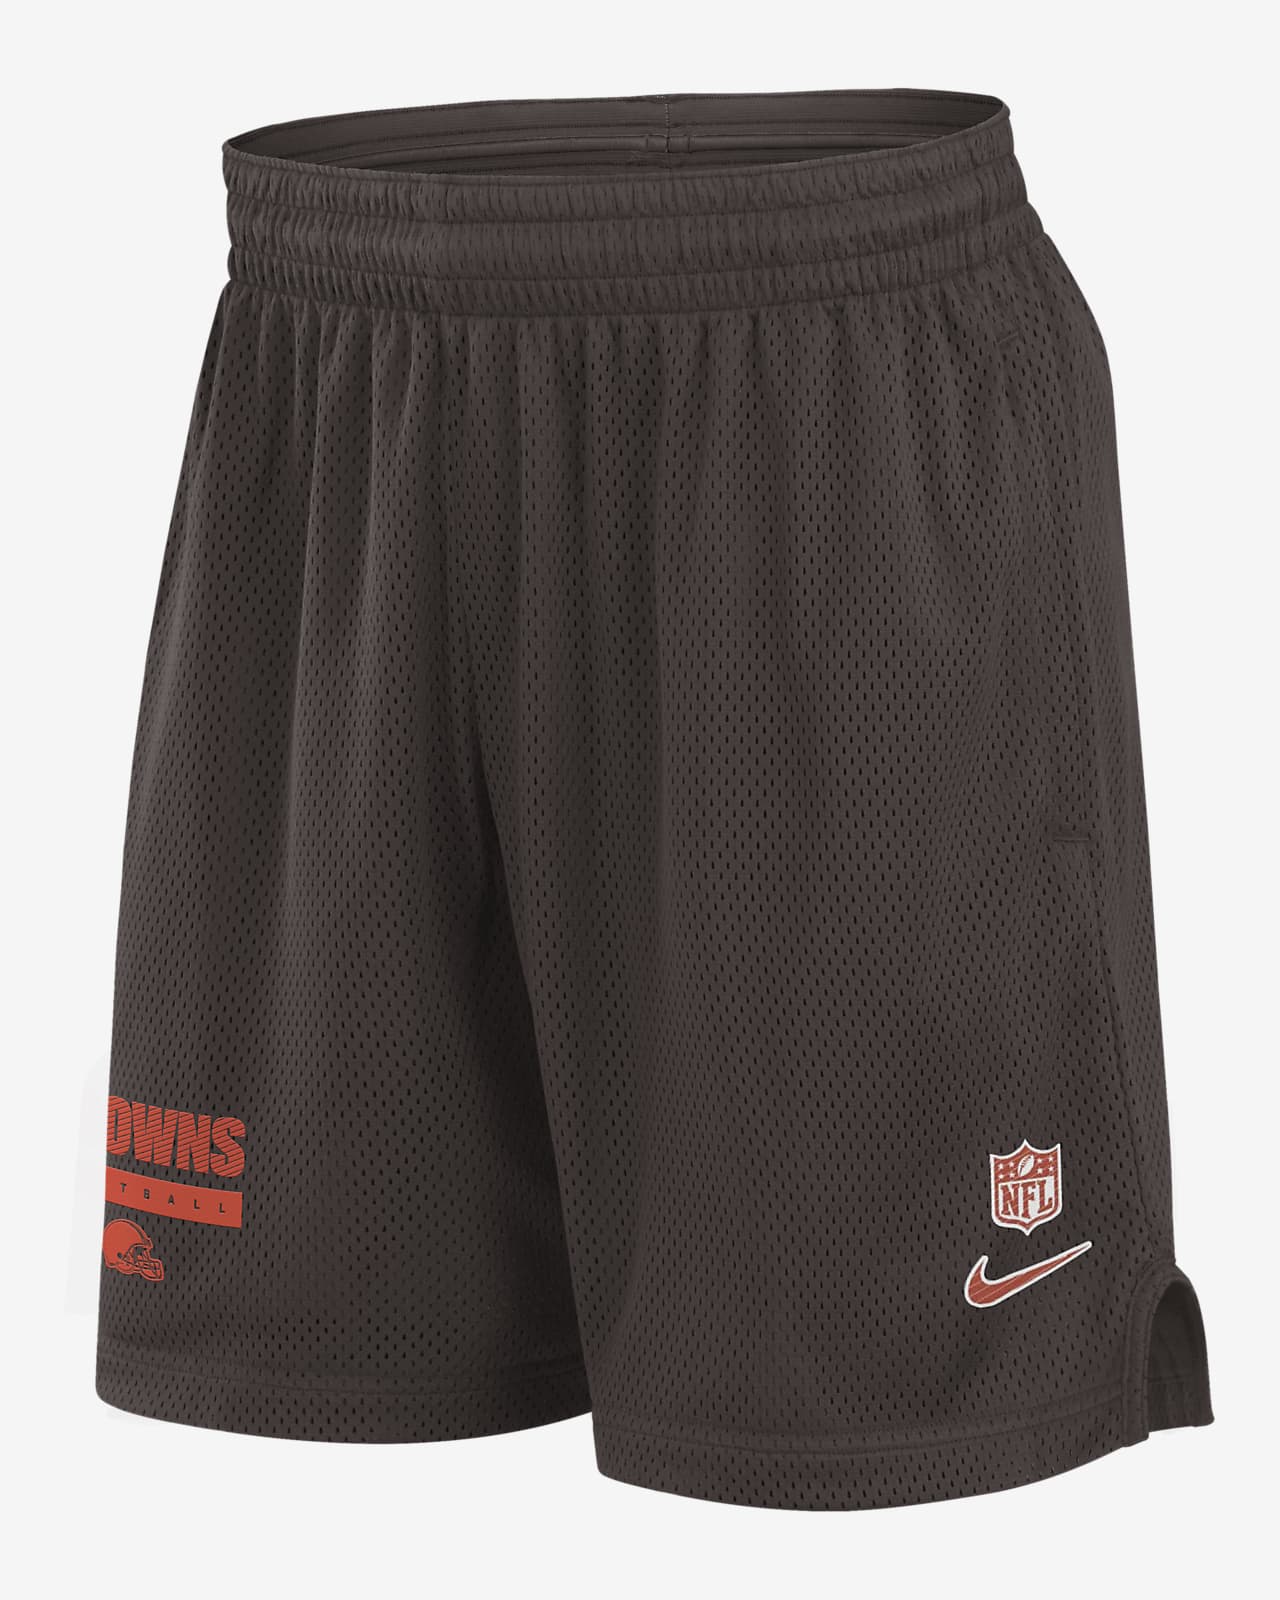 Cleveland Browns Sideline Men's Nike Dri-FIT NFL Shorts